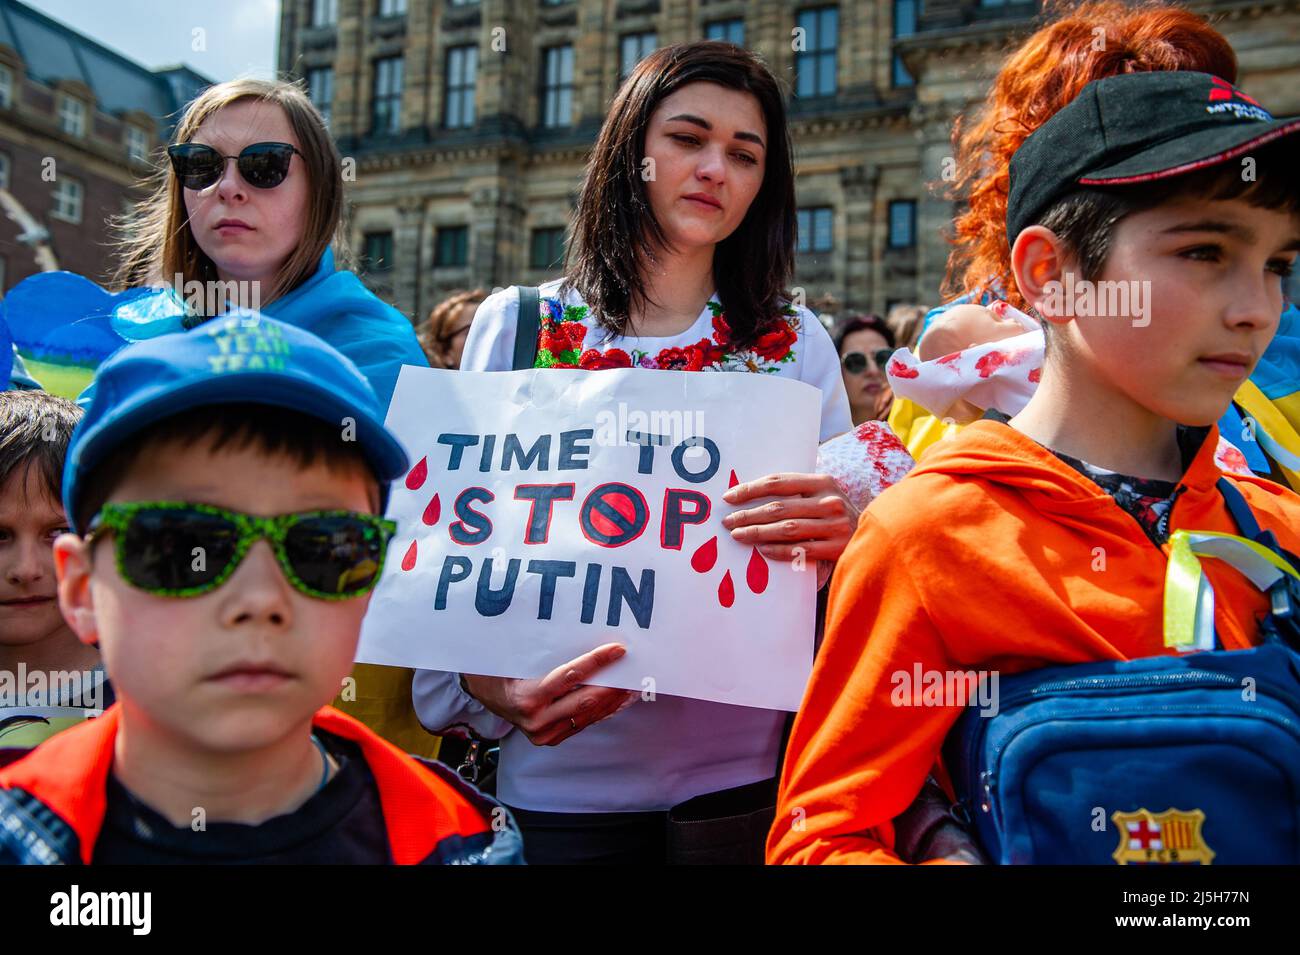 Während der Demonstration wird eine ukrainische Frau mit einem Plakat gegen Putin gesehen. Die ukrainische Gemeinschaft in den Niederlanden, hauptsächlich Frauen und Kinder, versammelte sich im Zentrum der Stadt, um die Aufmerksamkeit der Welt auf die schrecklichen Tragödien der Kinder in der Ukraine zu lenken, die durch die russische Aggression verursacht wurden. Innerhalb von 21 Tagen nach dem Krieg in der Ukraine (Stand: März 16) wurden mindestens 108 Kinder beim Beschuss der russischen Streitkräfte getötet und mehr als 100 verletzt. Während des Protestes hielten einige der Frauen Puppen in einer weißen Decke mit gefälschten Blutflecken. Stockfoto